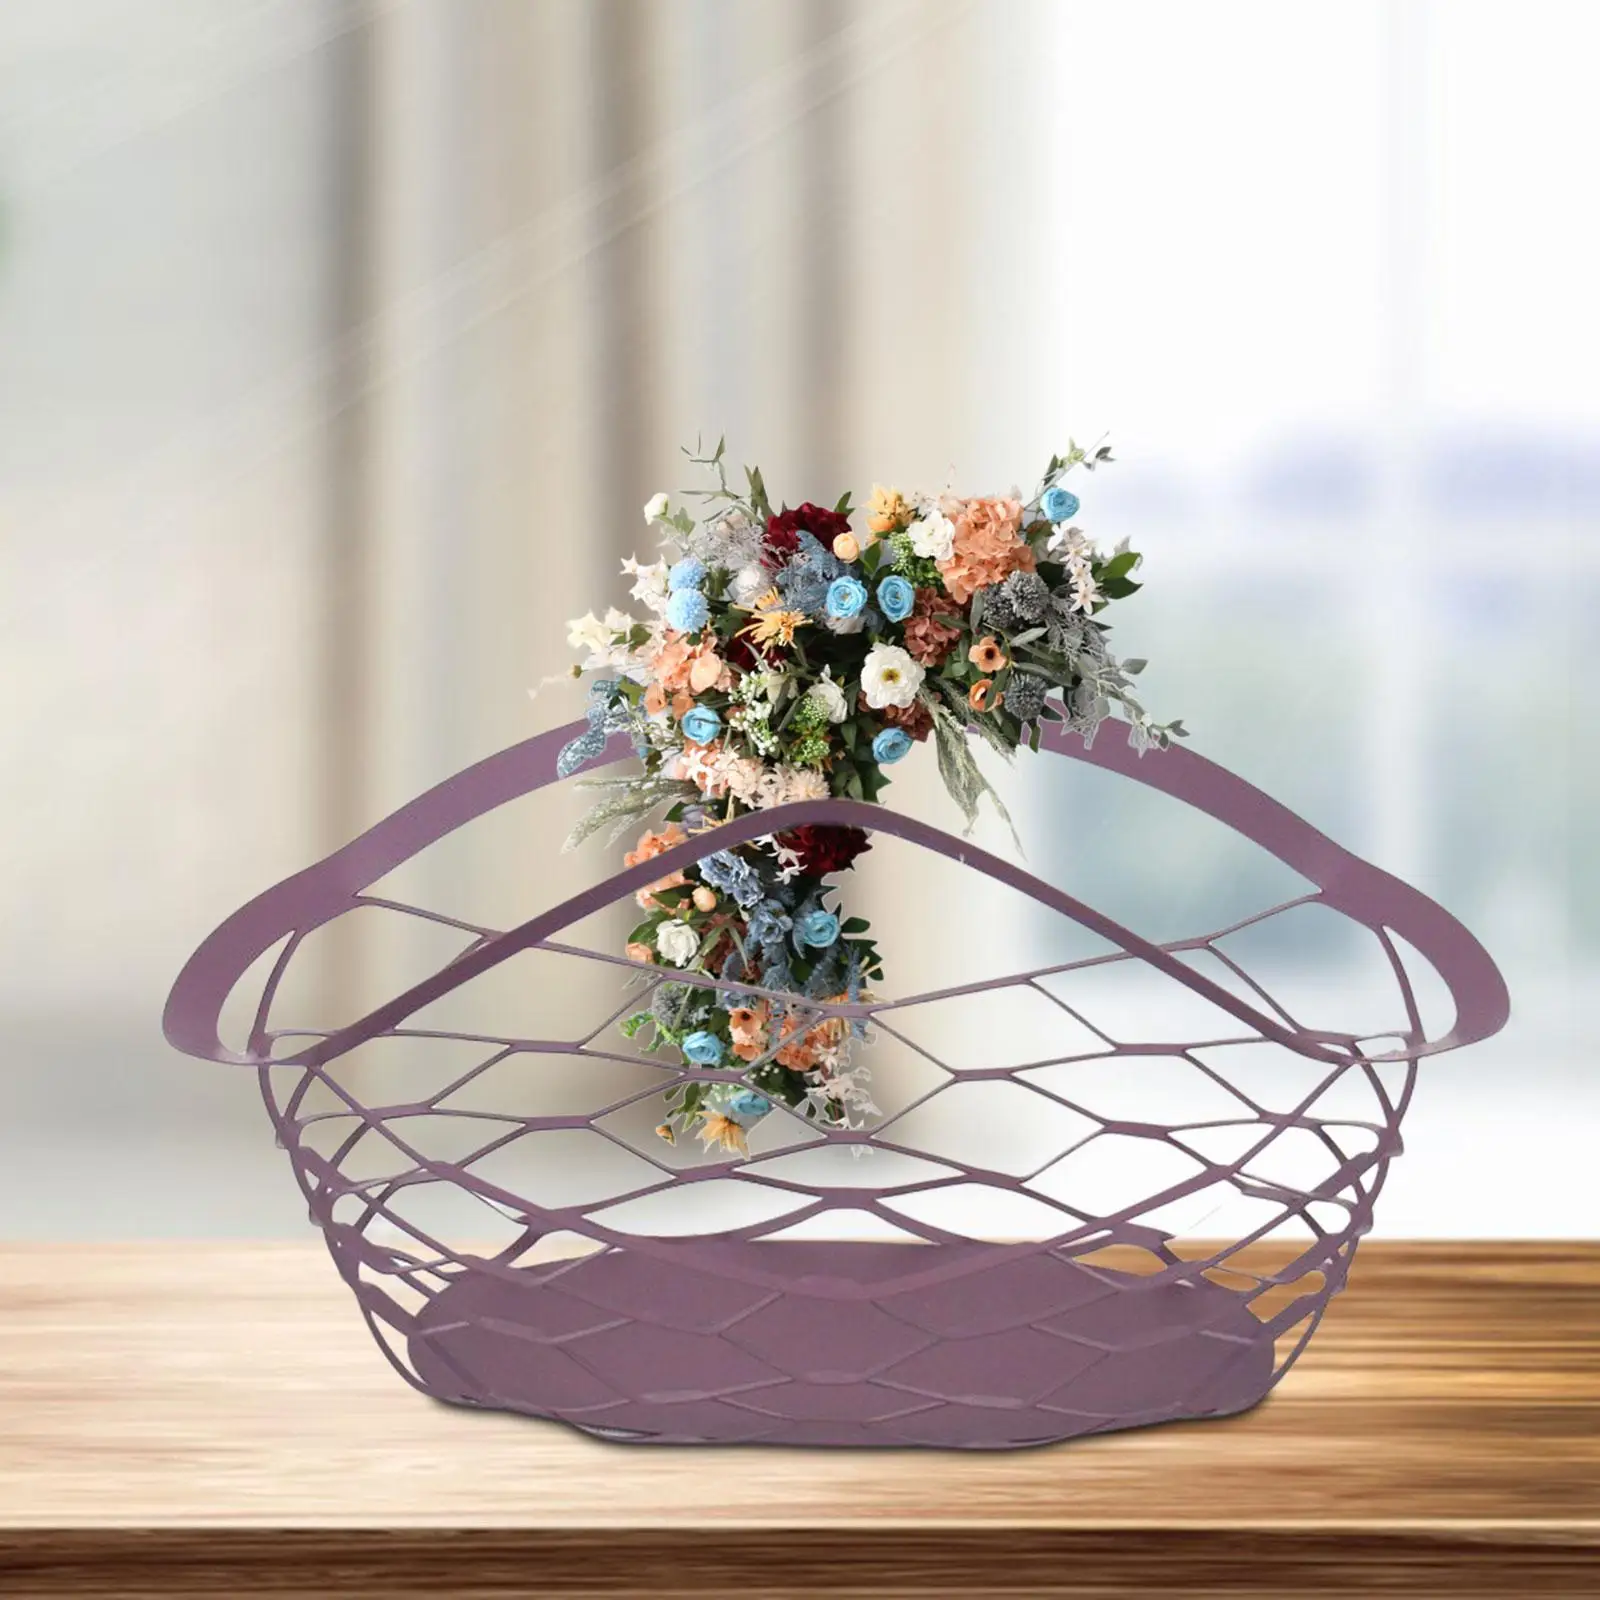 Flower Basket Multipurpose Girl Basket Organizer Flower Arrangement Basket Elegant for Picnic Bedroom Party Holiday Home Decor